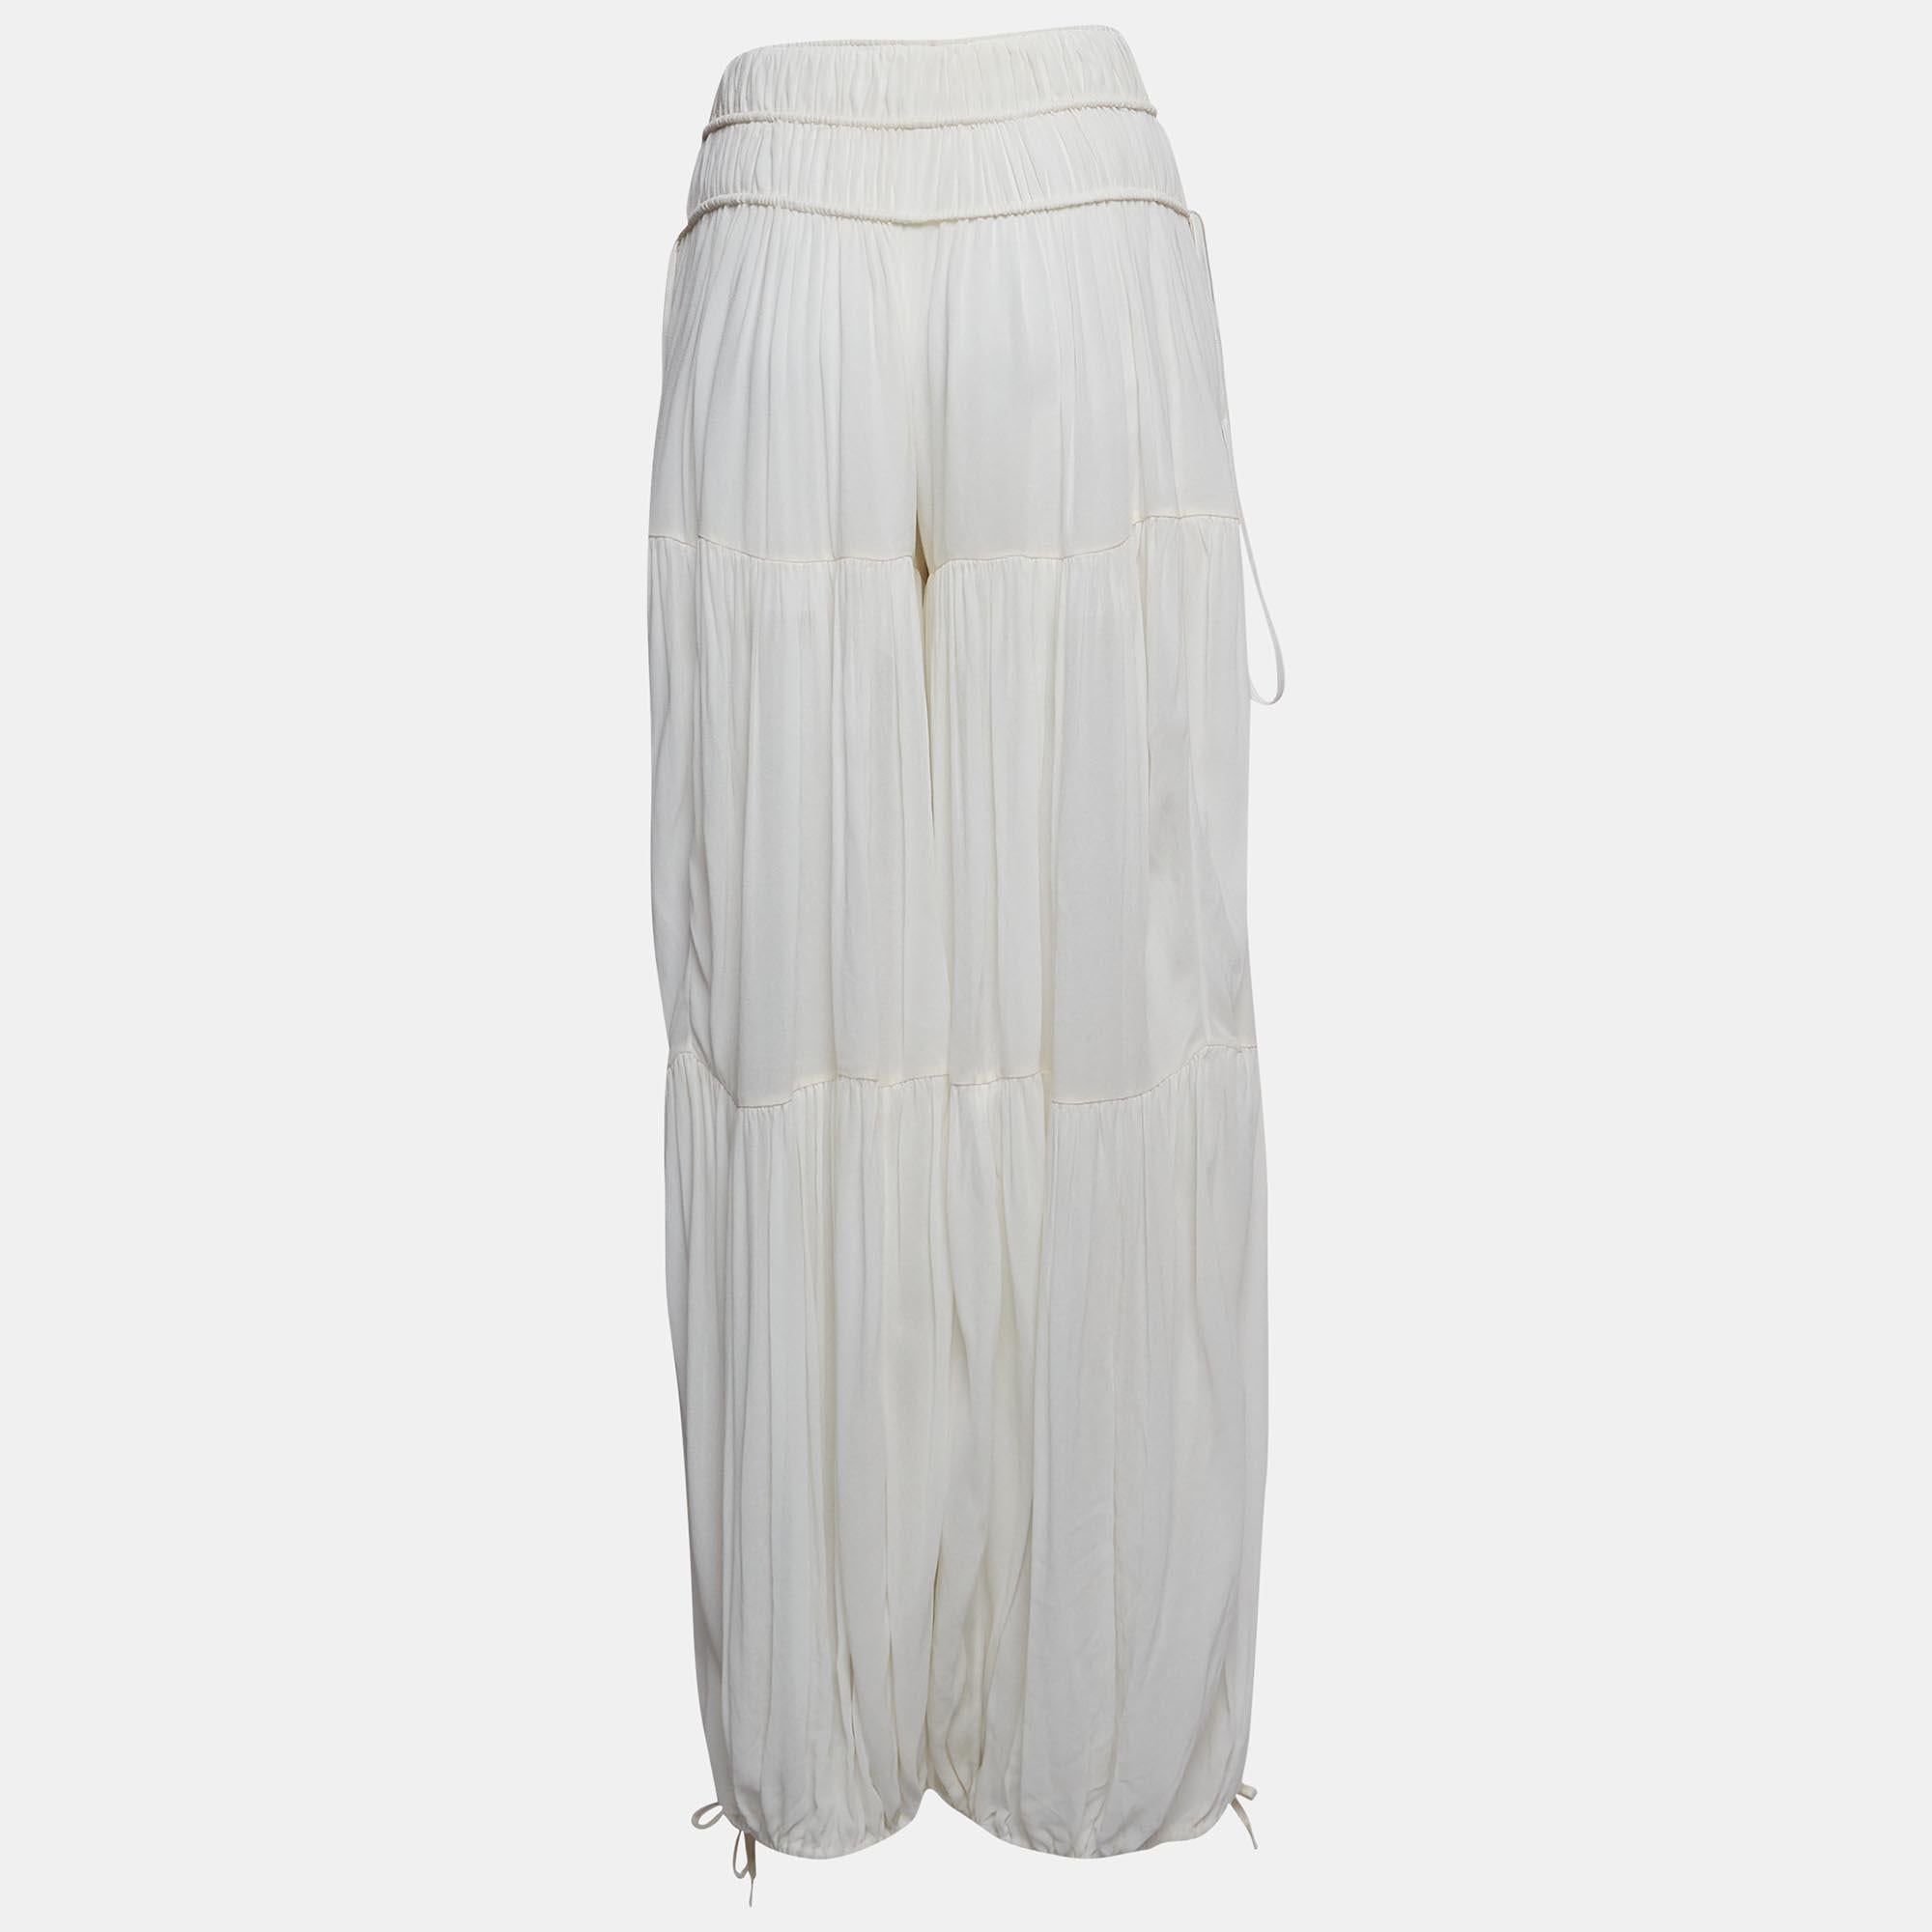 Taillé avec finesse, le pantalon harem de Chloé dégage un charme sans effort. Délicatement conçues en crêpe transparent, elles présentent des détails froncés pour une touche de fantaisie. Adoptez le confort et le style grâce à leur silhouette harem